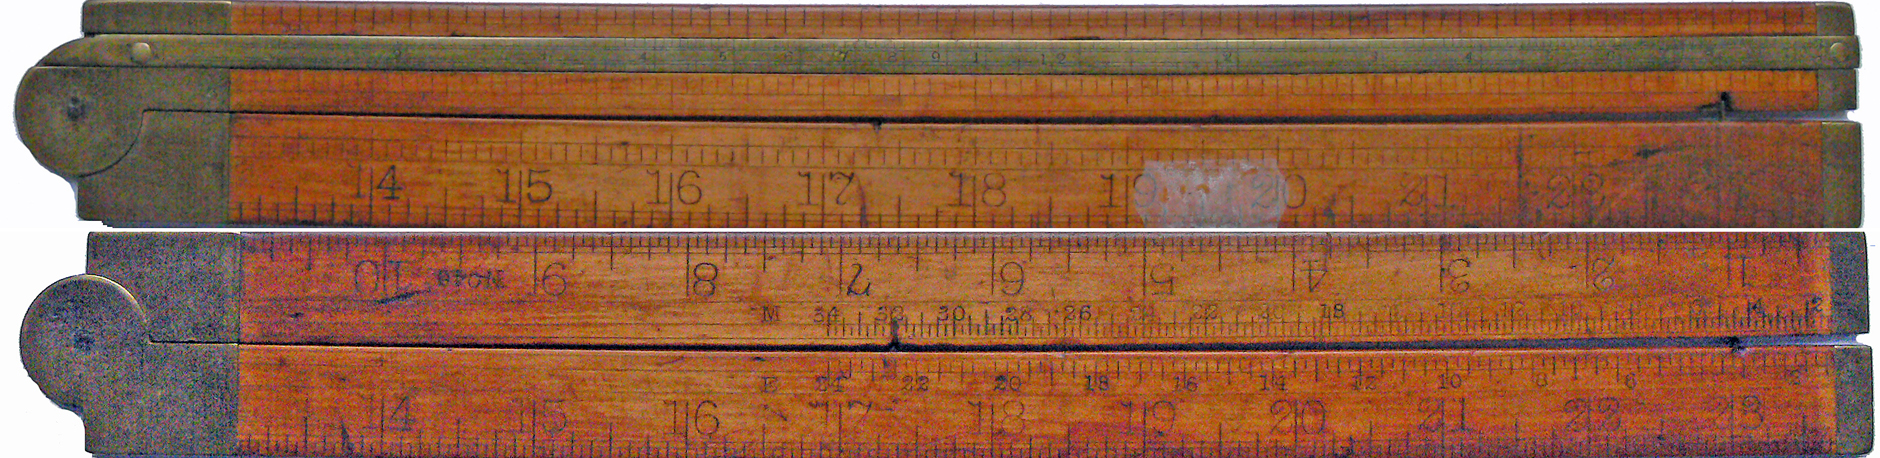 Stanley (USA) Carpenter Timber No. 46